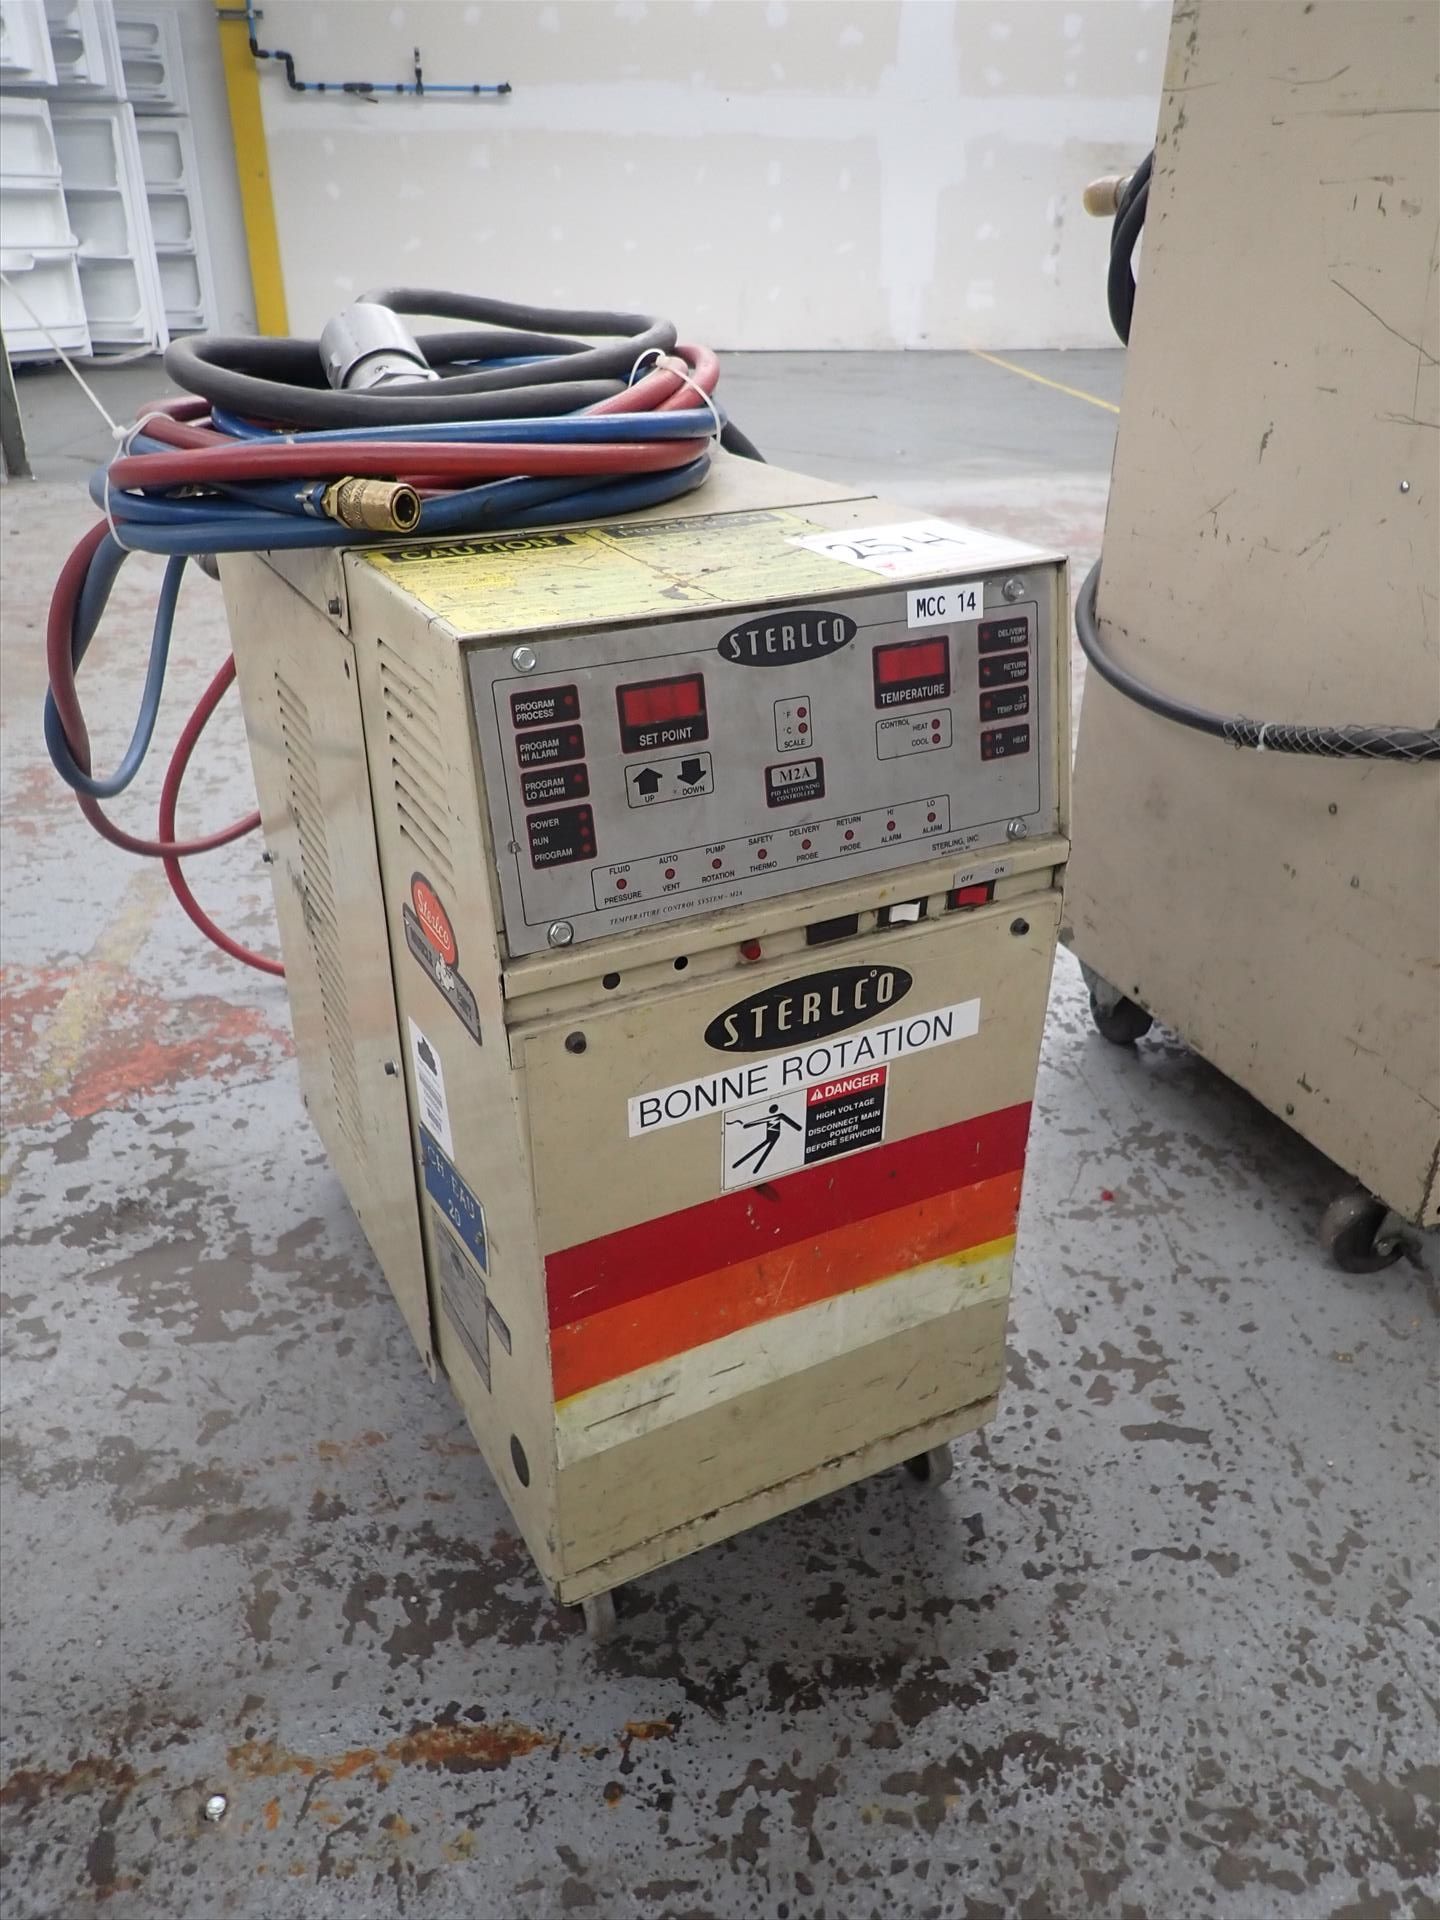 Sterlco water temperature controller, mod. M23410-FCX, ser. no. 96E5193